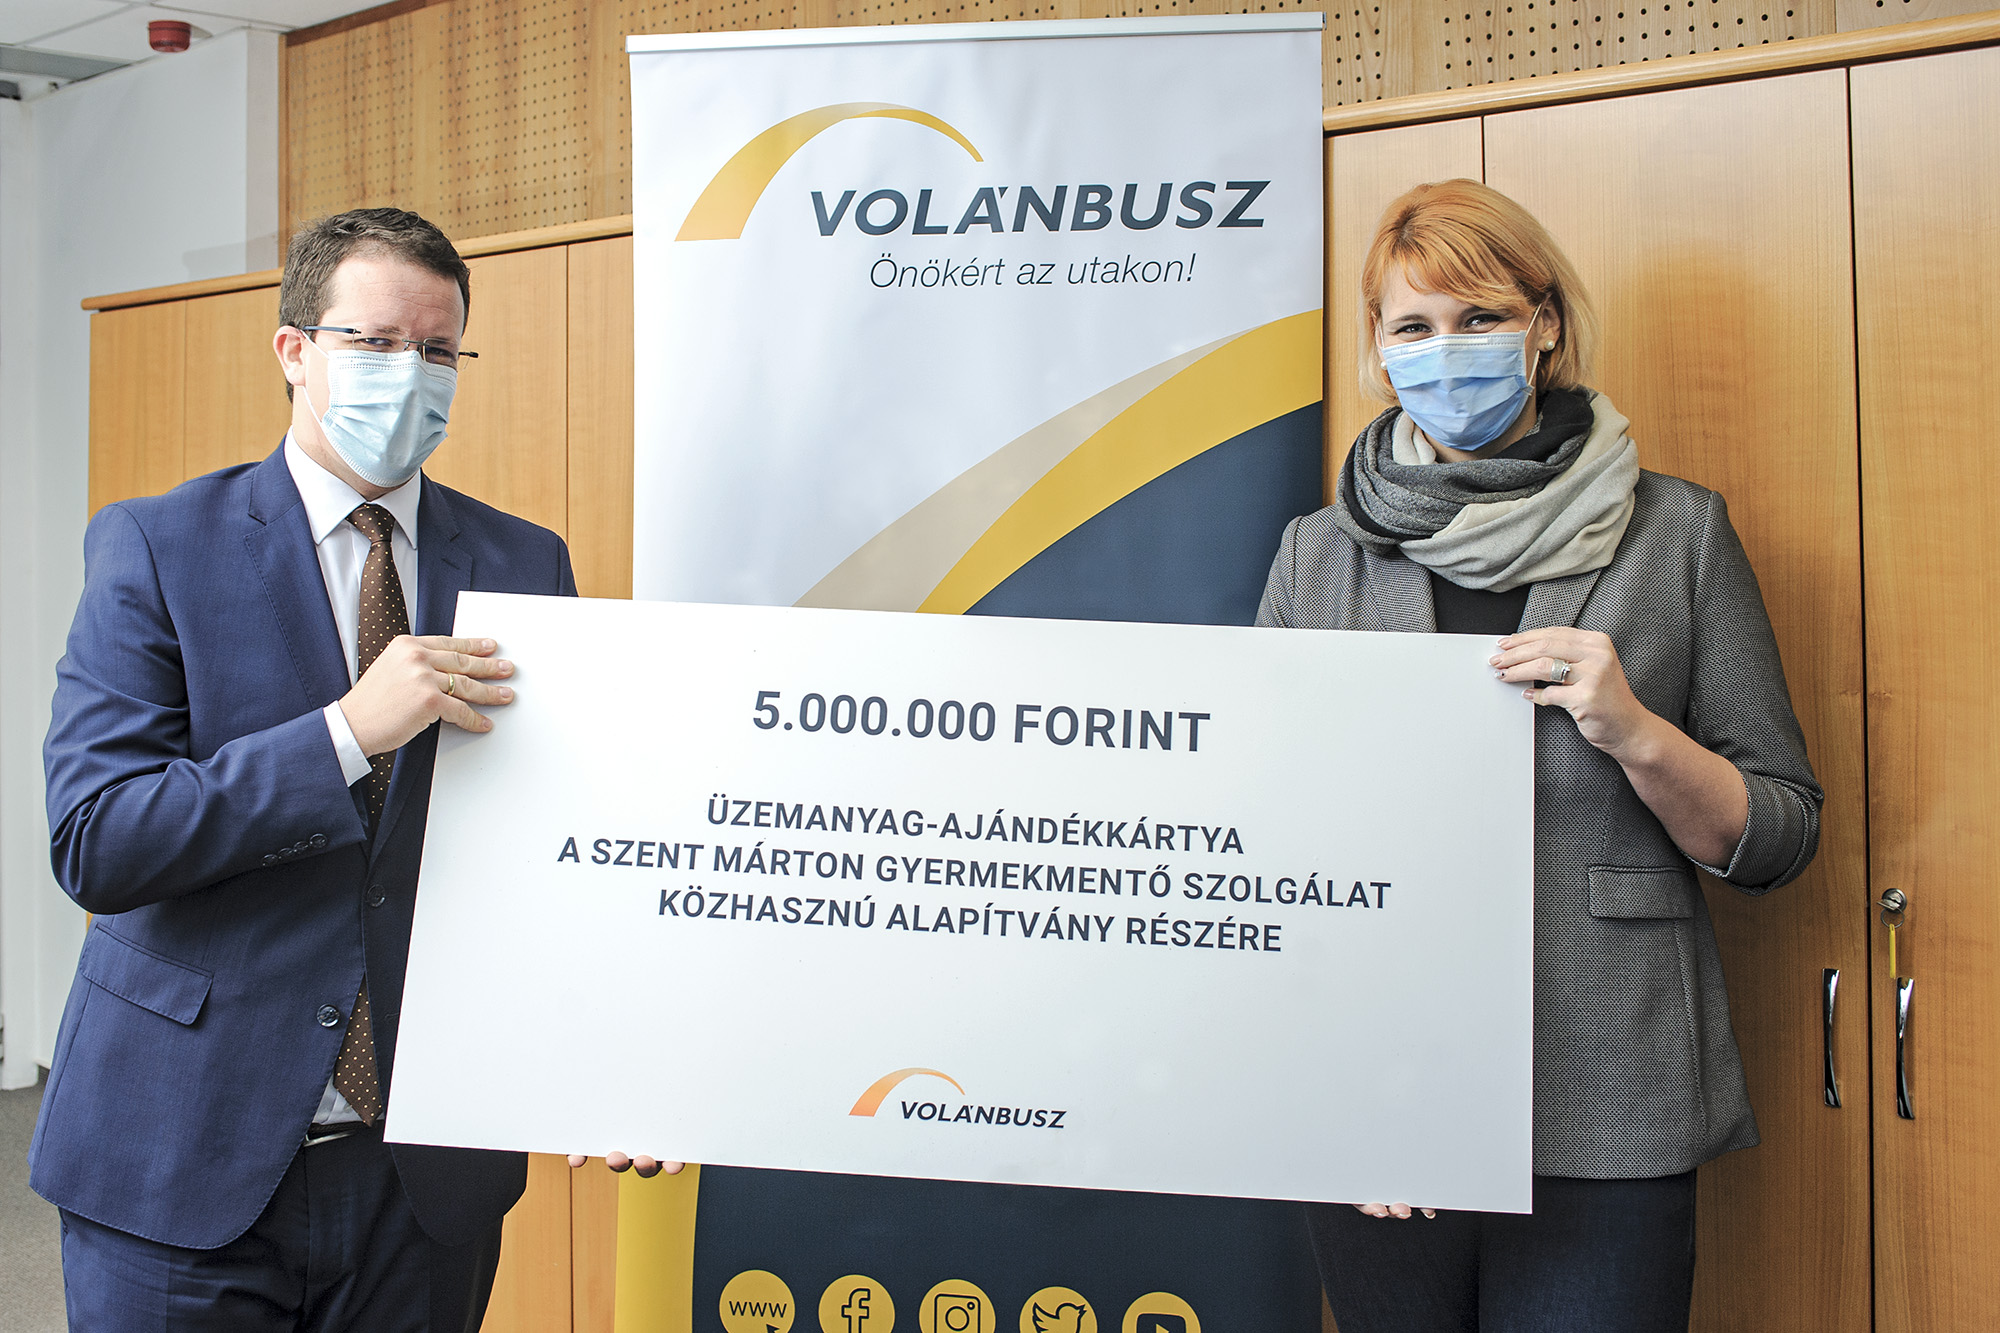 Dr. Pafféri Zoltán átadja az üzemanyag-ajándékkártyát a Szent Márton Gyermekmentő Szolgálatnak